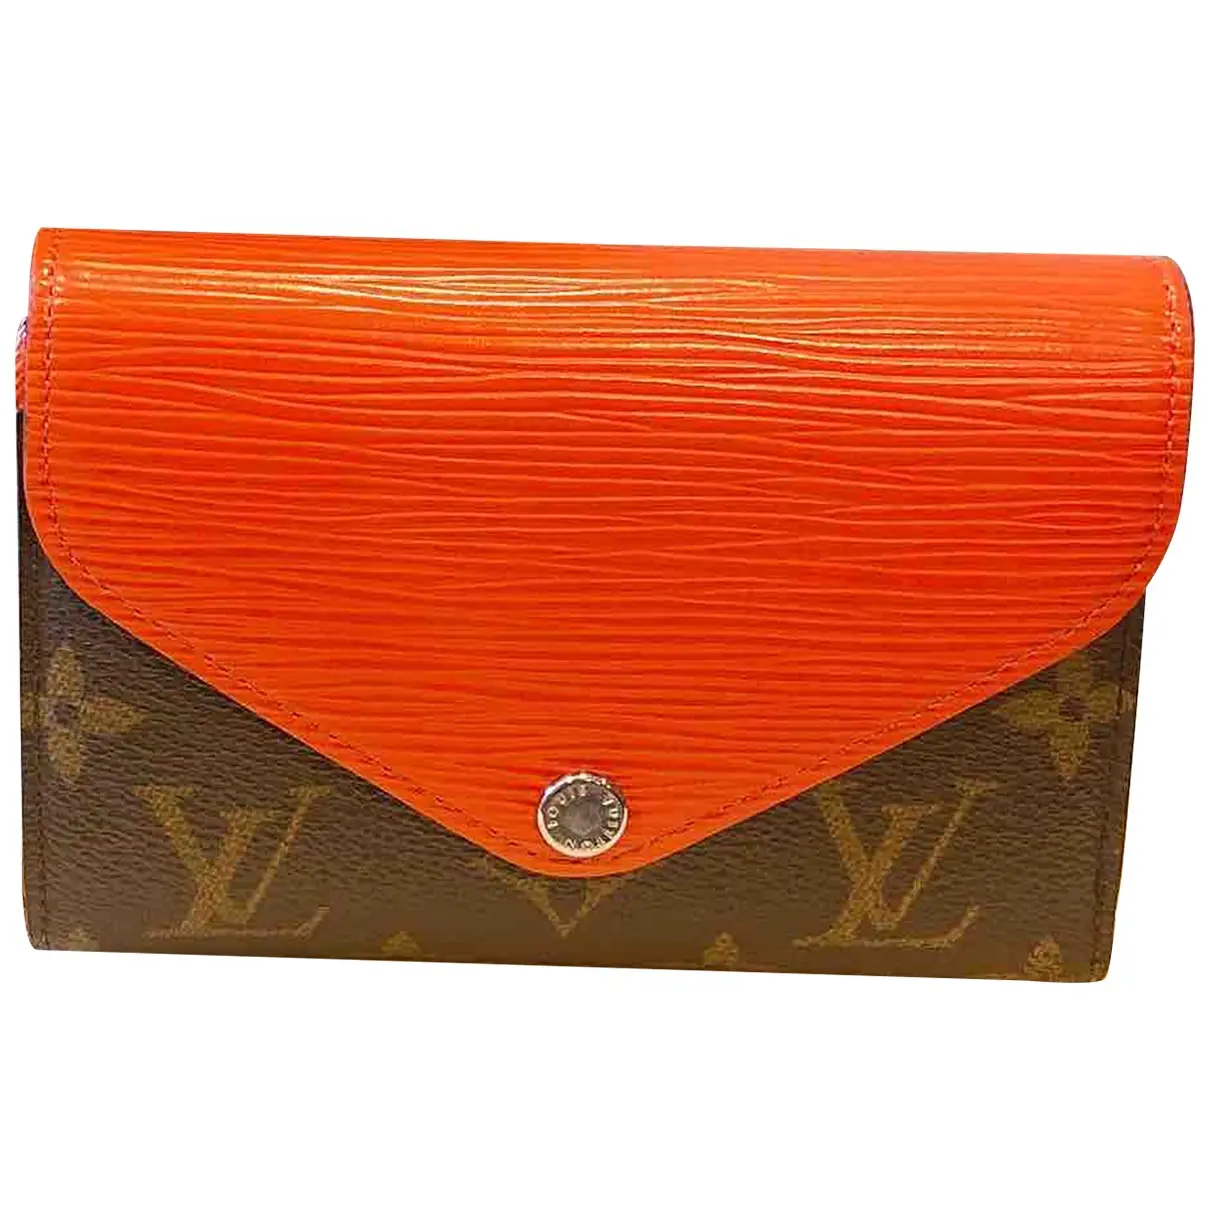 Zoé leather wallet Louis Vuitton